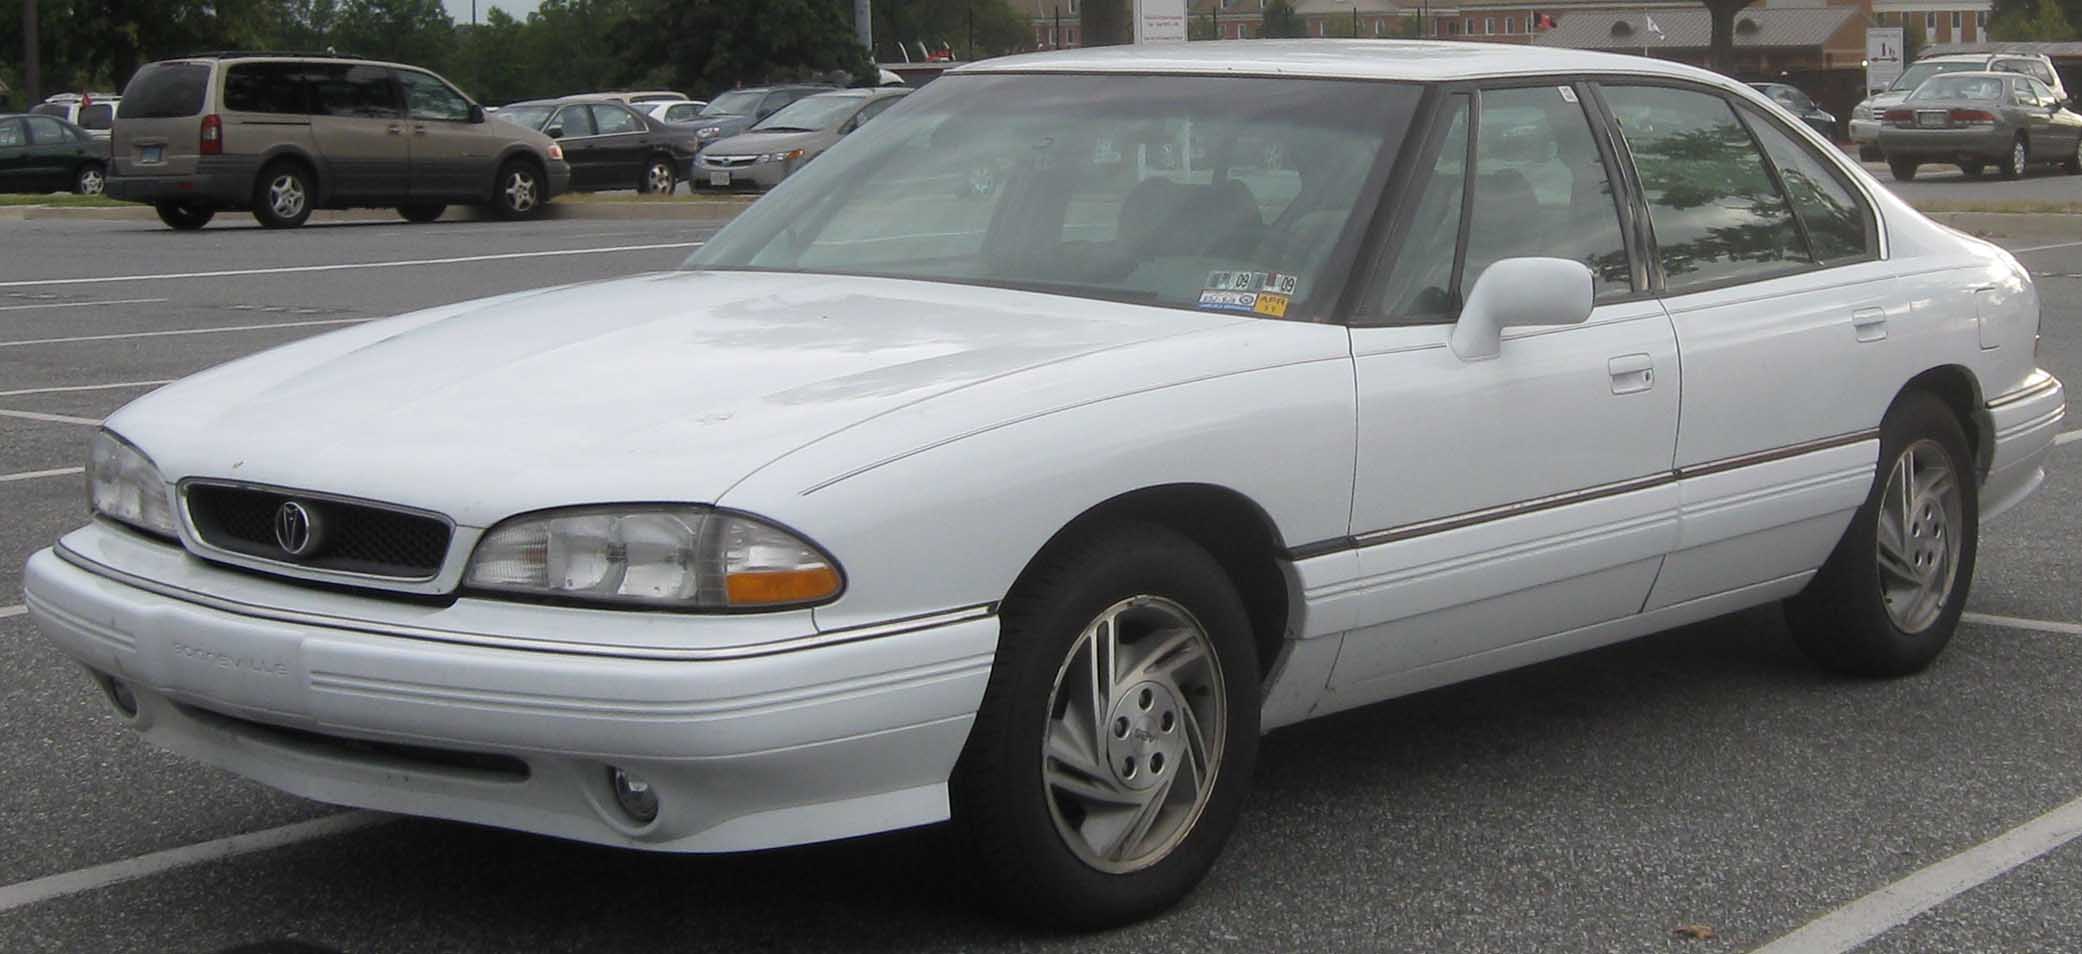 Pontiac Bonneville IX 1991 - 1999 Sedan #1